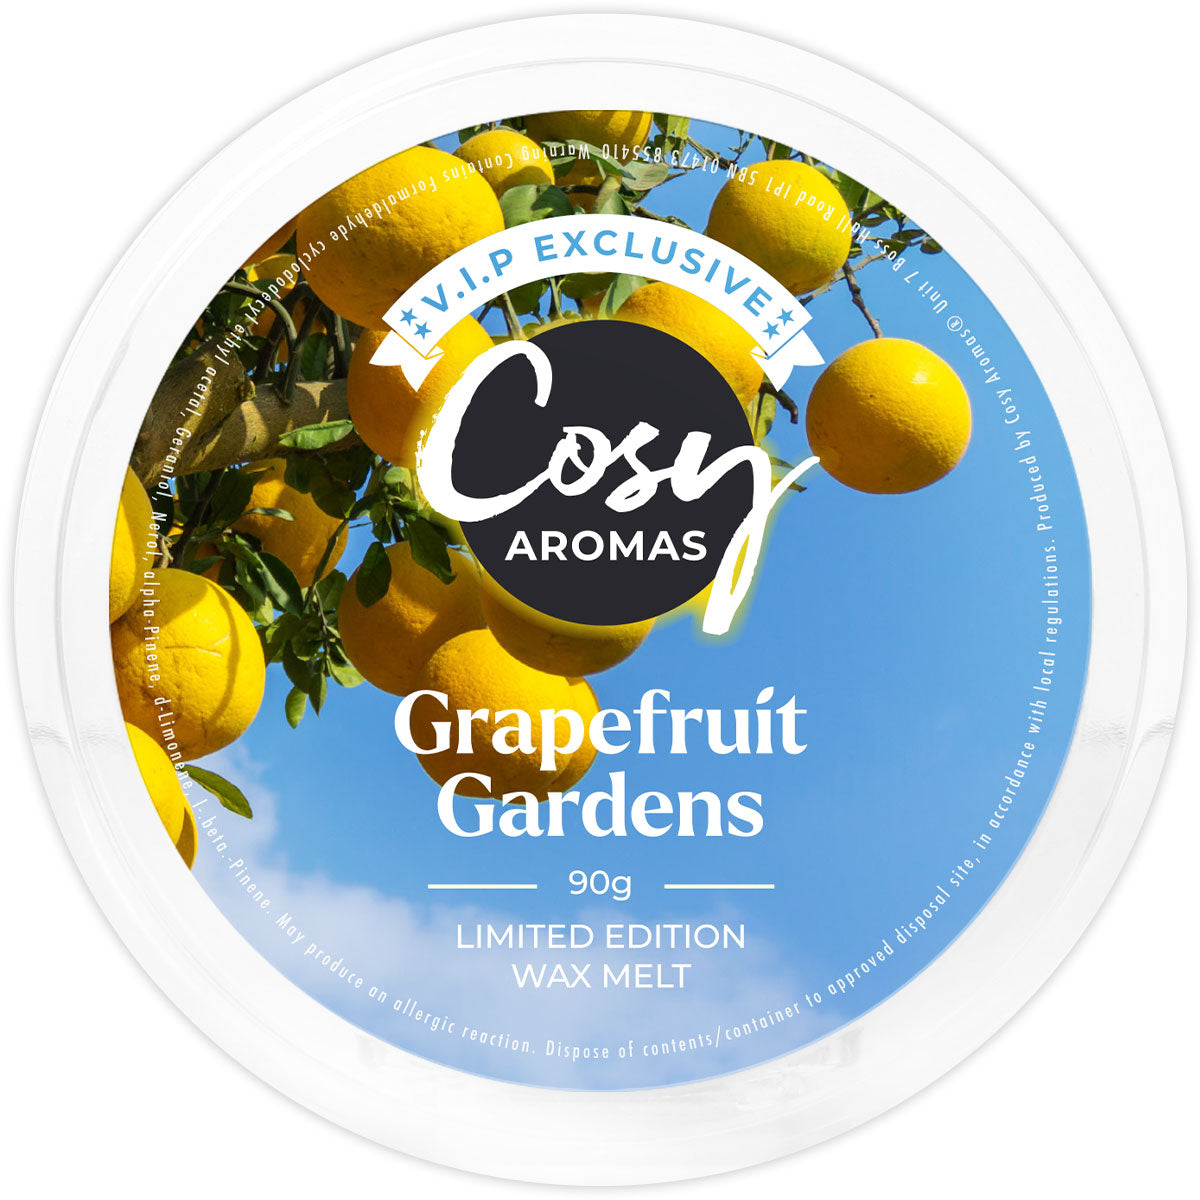 Grapefruit Gardens VIP Exclusive Wax Melt